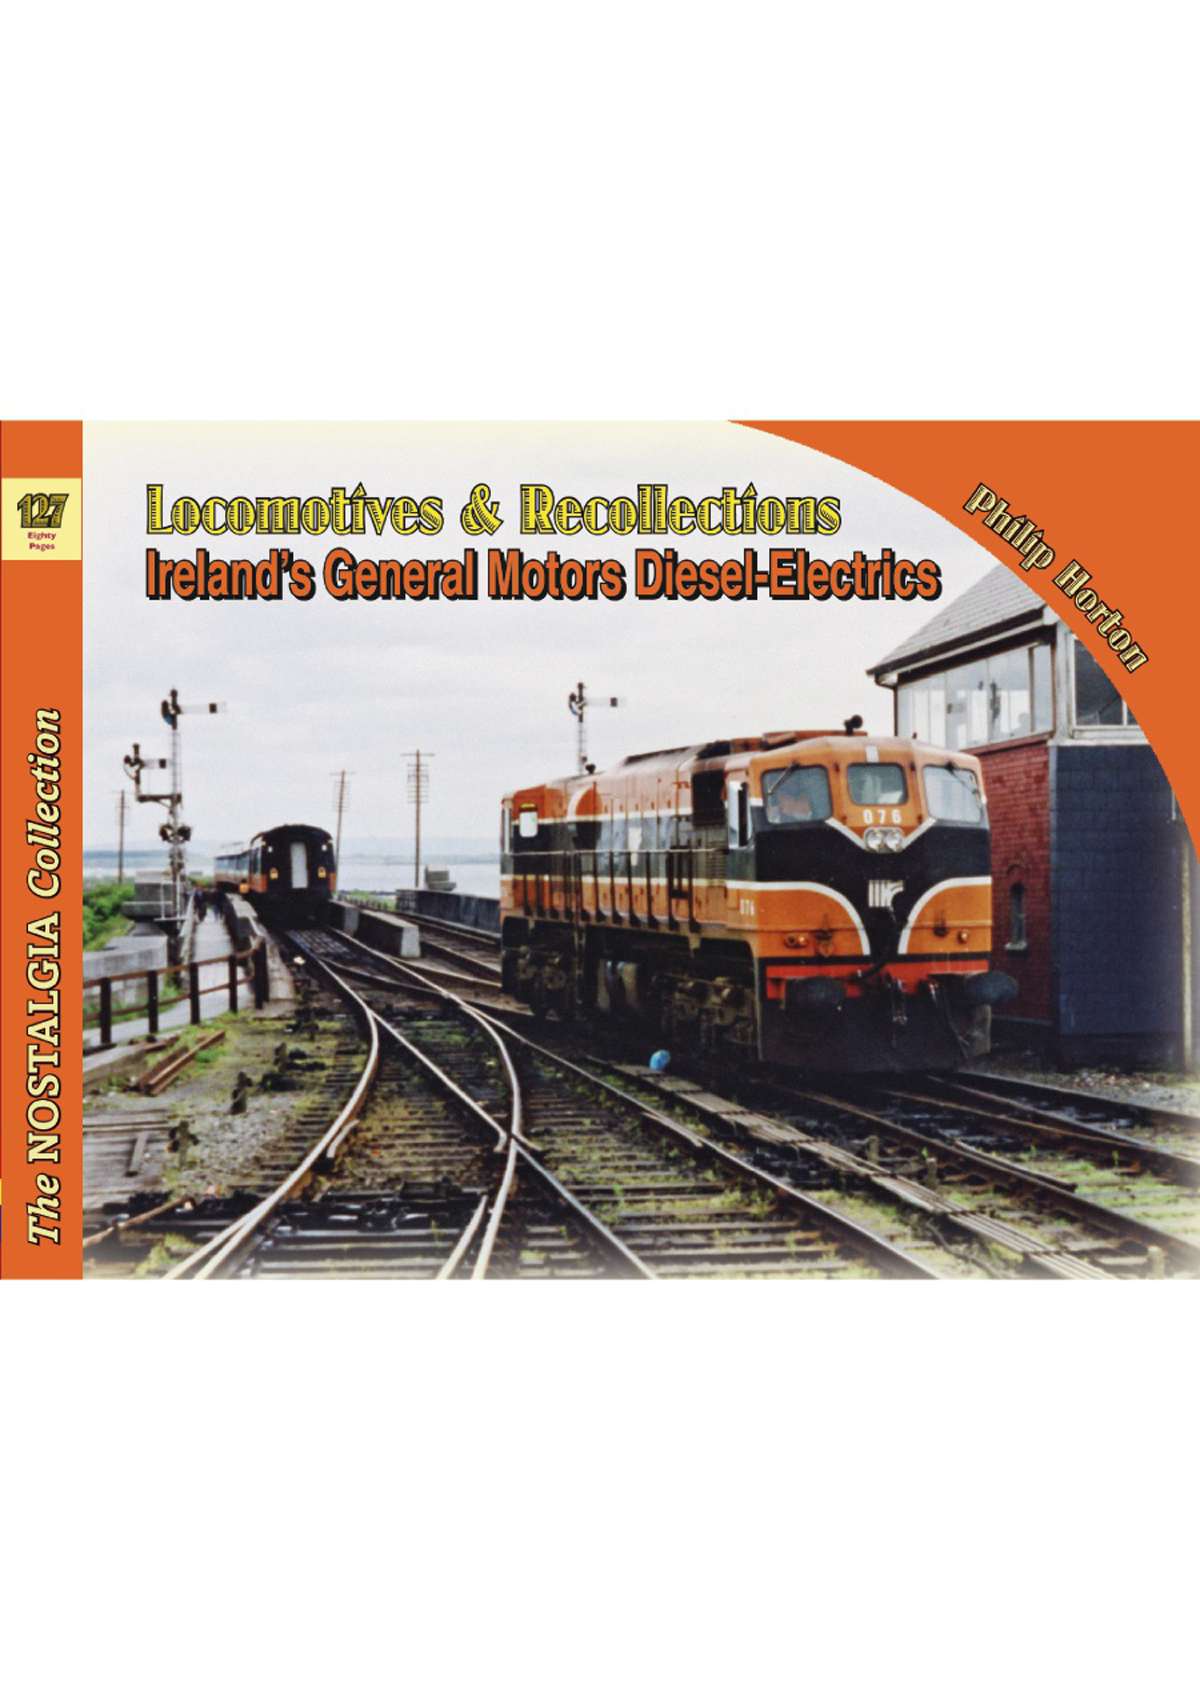 5997 - Locomotives & Recollections 127 Ireland's General Motors Diesel-Electrics